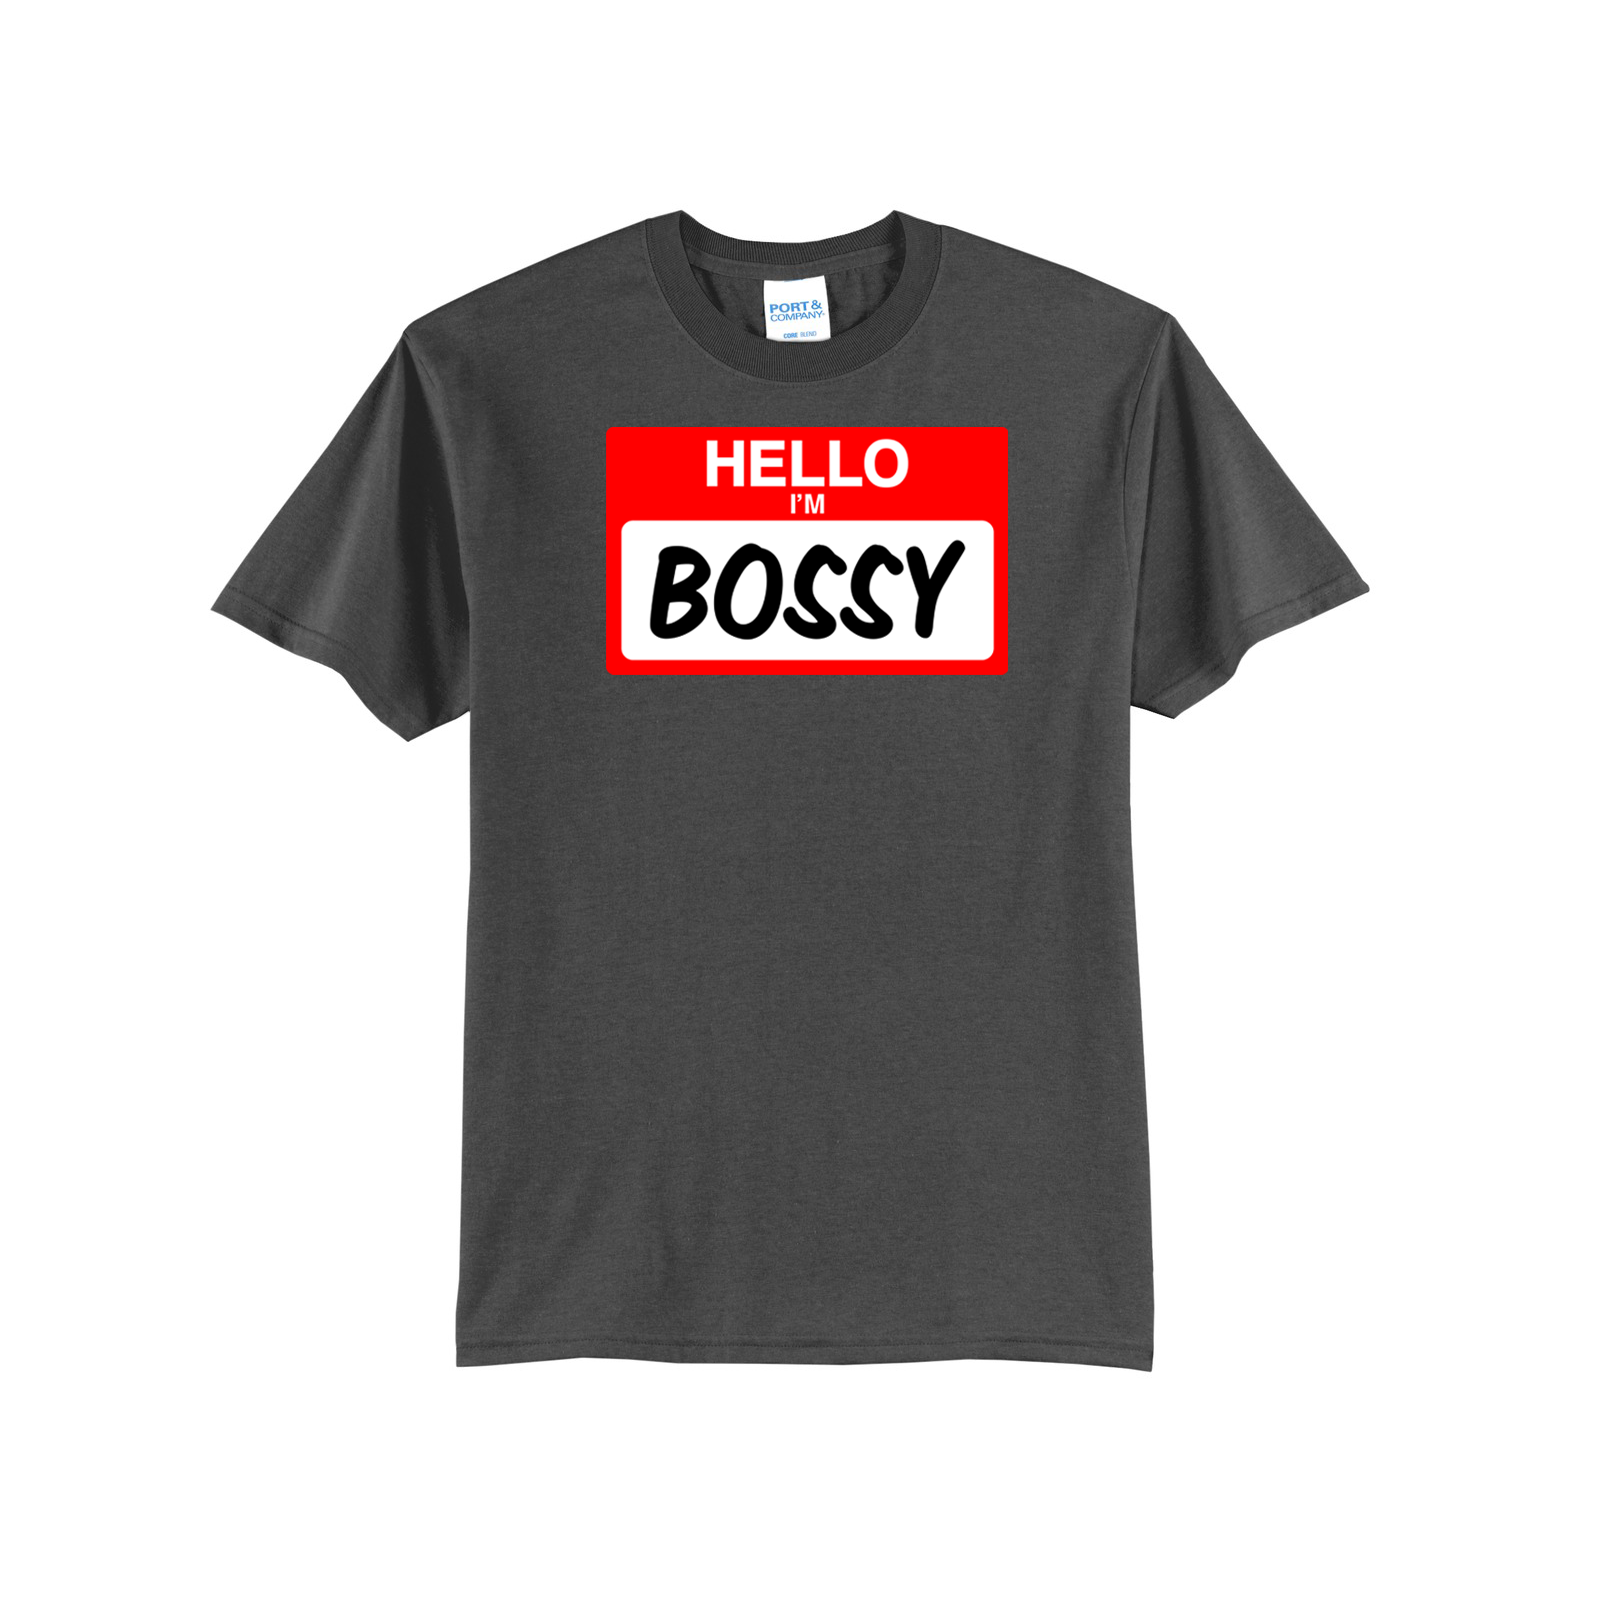 'Hello I'm Bossy' Short Sleeve Tee